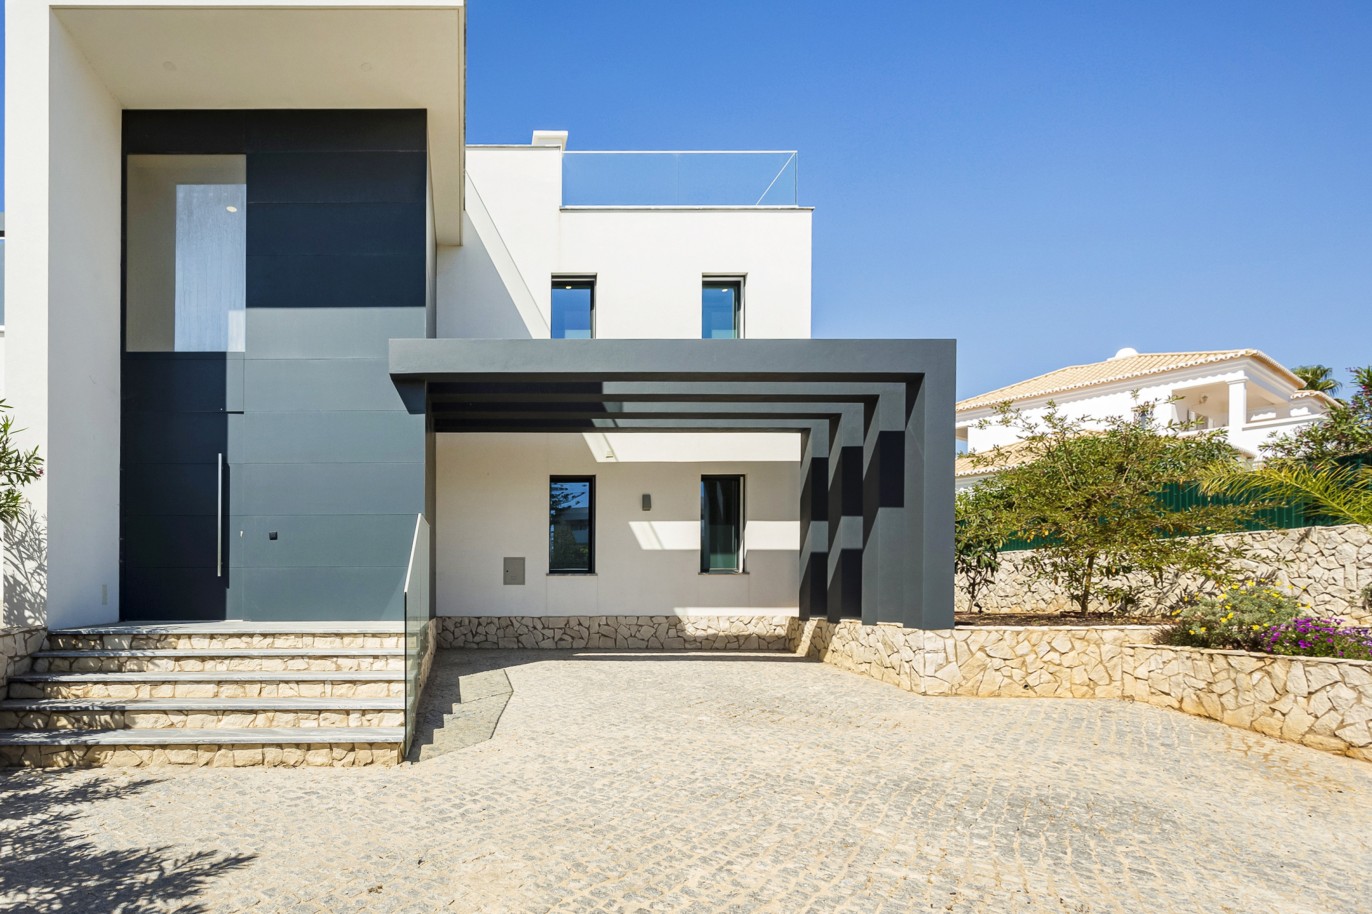 4 Bedroom Villa, with swimming pool, for sale, in Ferragudo, Algarve_222726